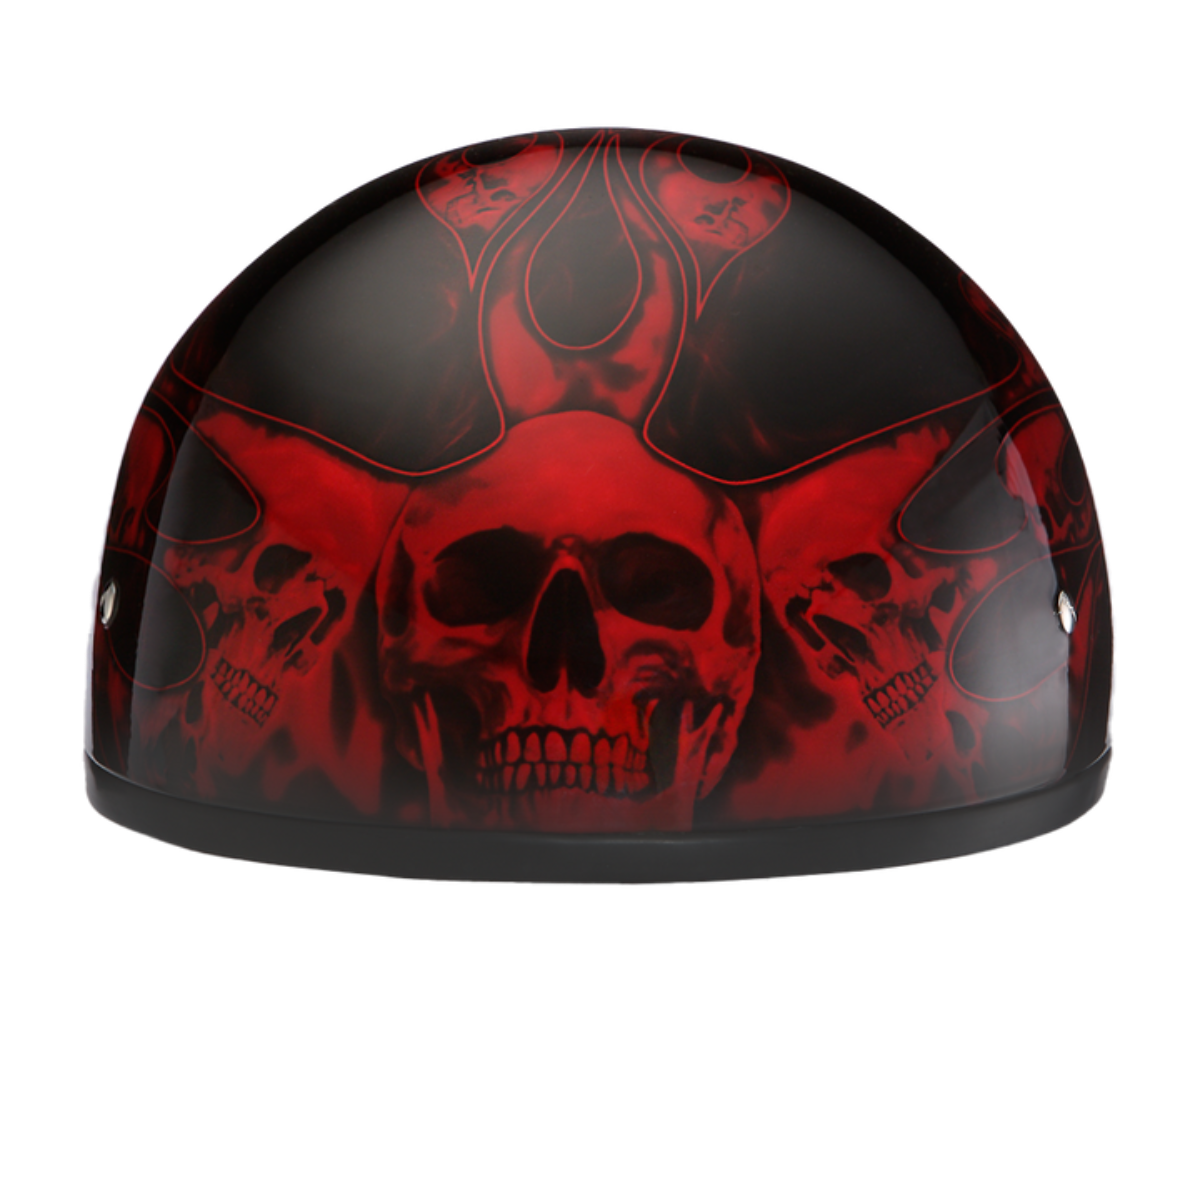 Daytona D.O.T Skull Cap - w/Skull Red Flame Helmet